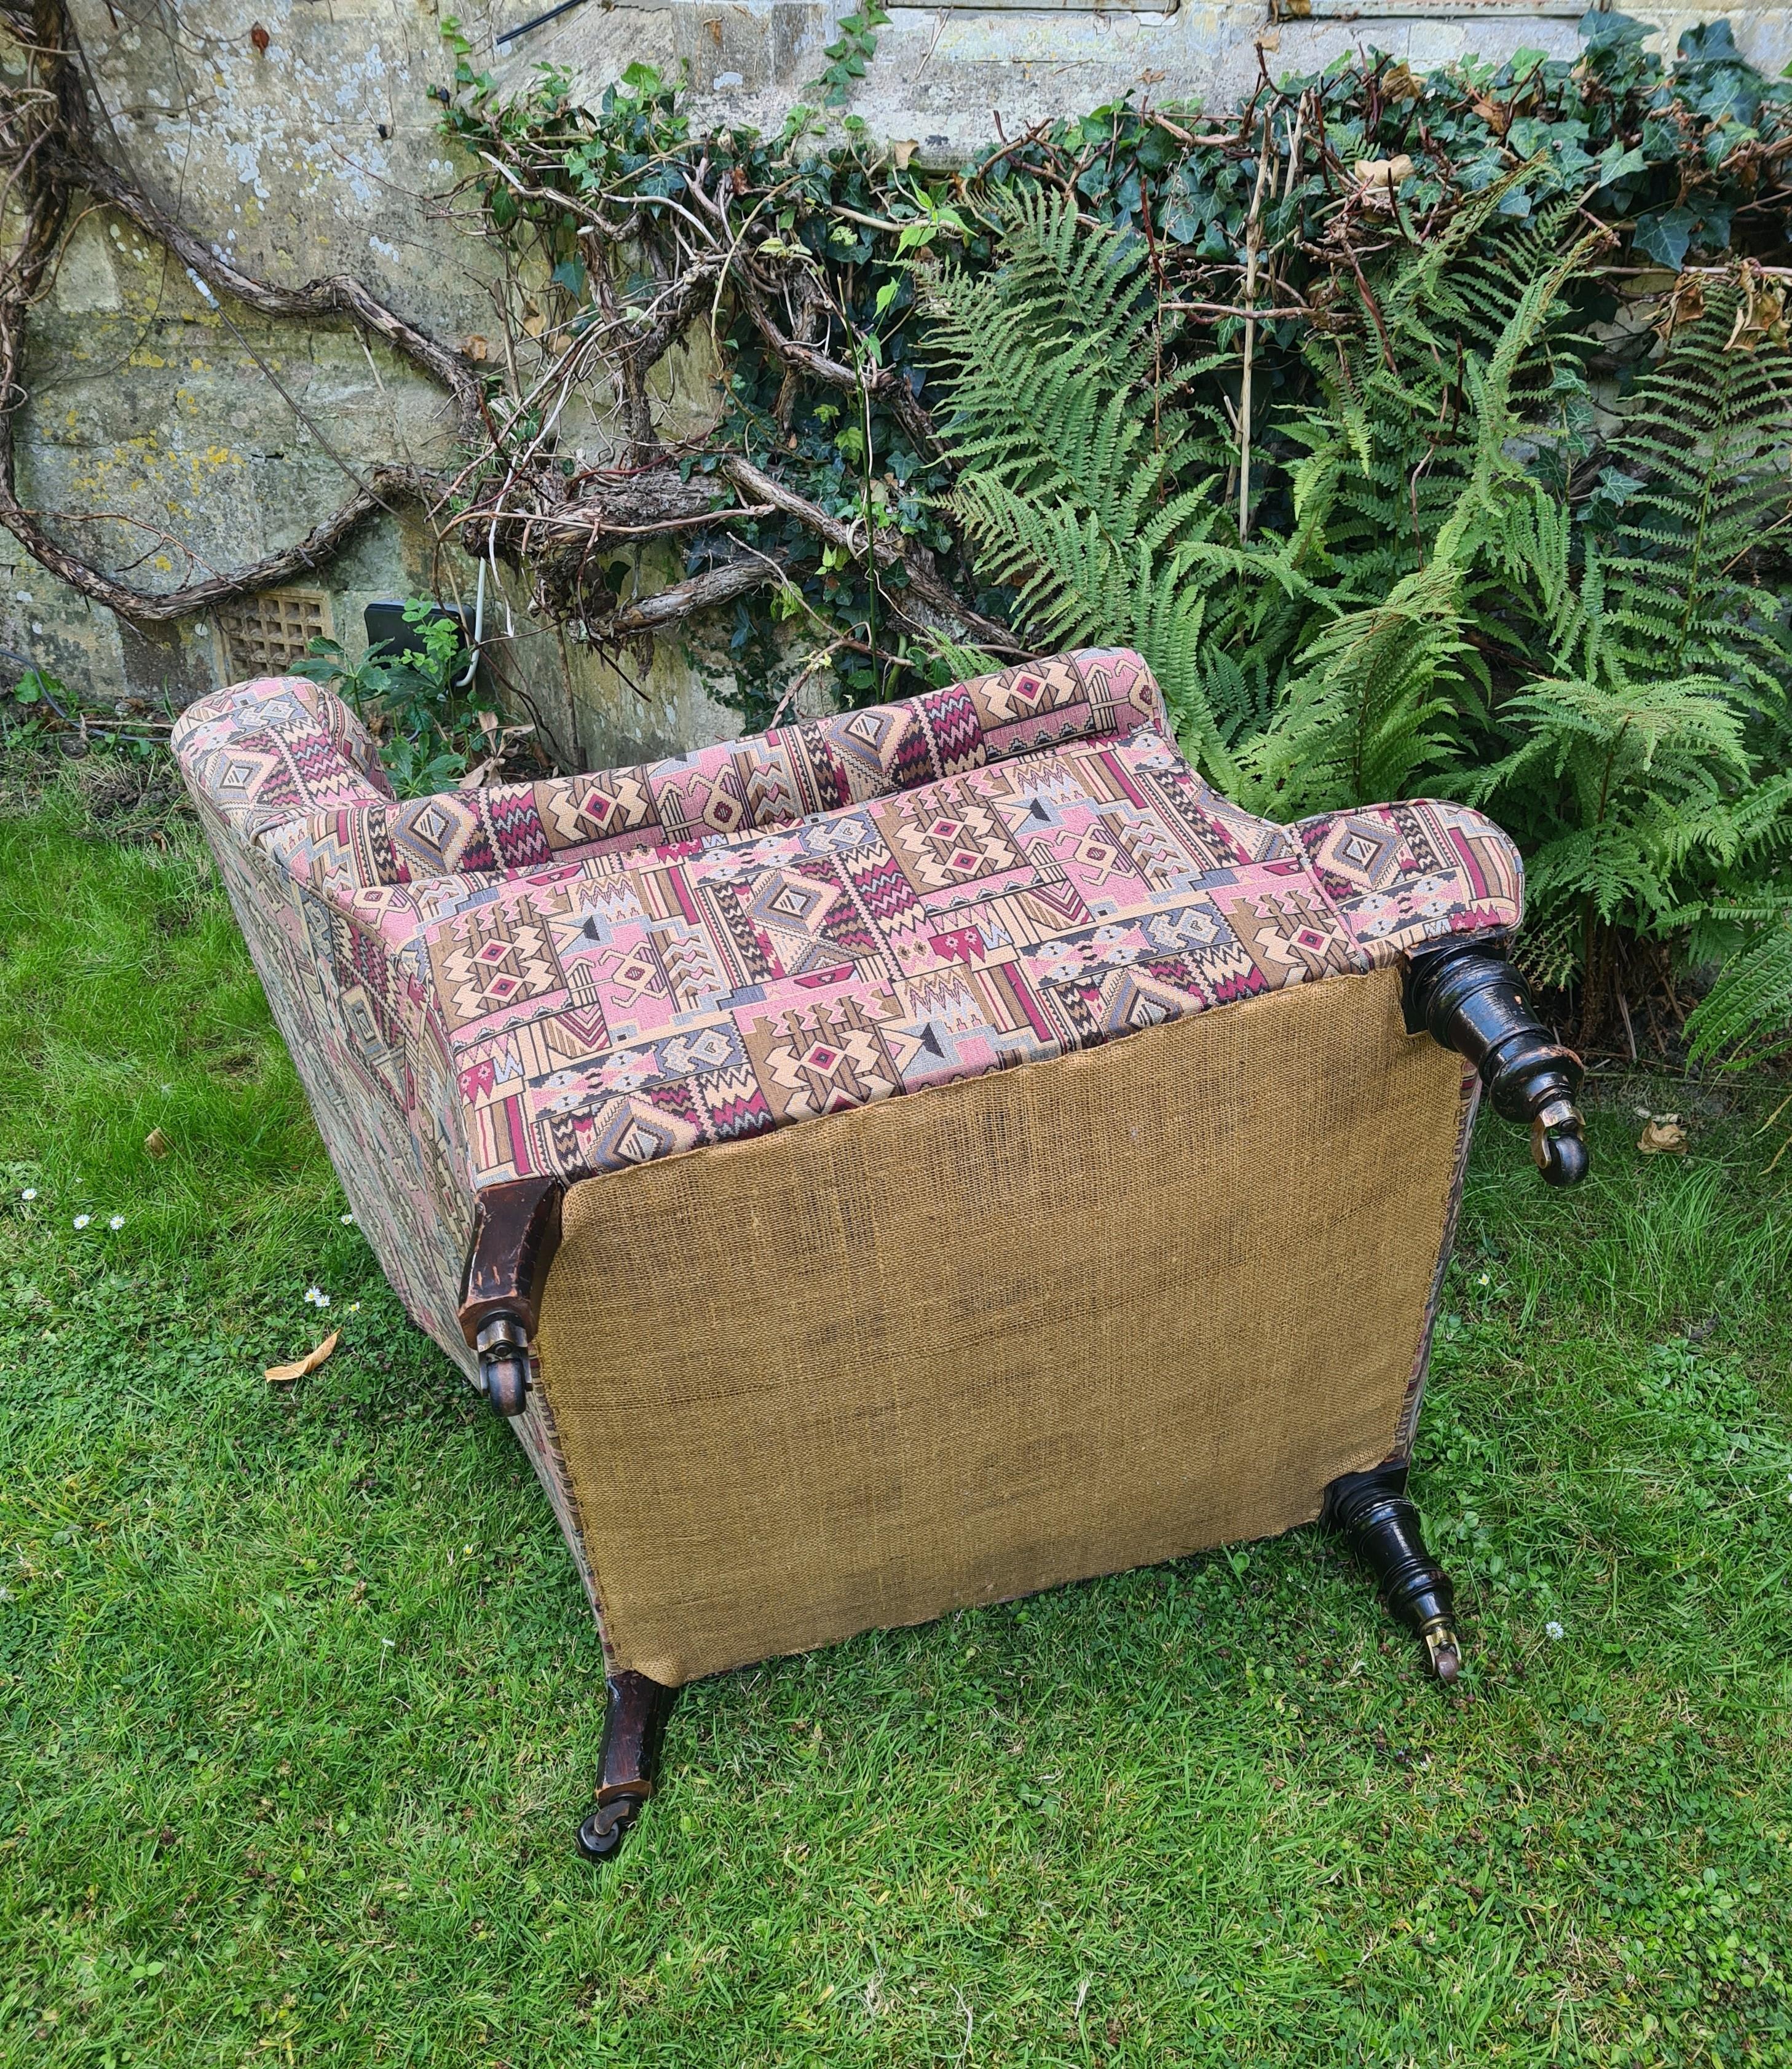 Hutton-Clarke Antiques freut sich, einen exquisiten viktorianischen gepolsterten Sessel aus der Zeit um 1890 zu präsentieren. Dieses bemerkenswerte Stück steht anmutig auf gedrechselten Beinen, die von den originalen Rollen akzentuiert werden und